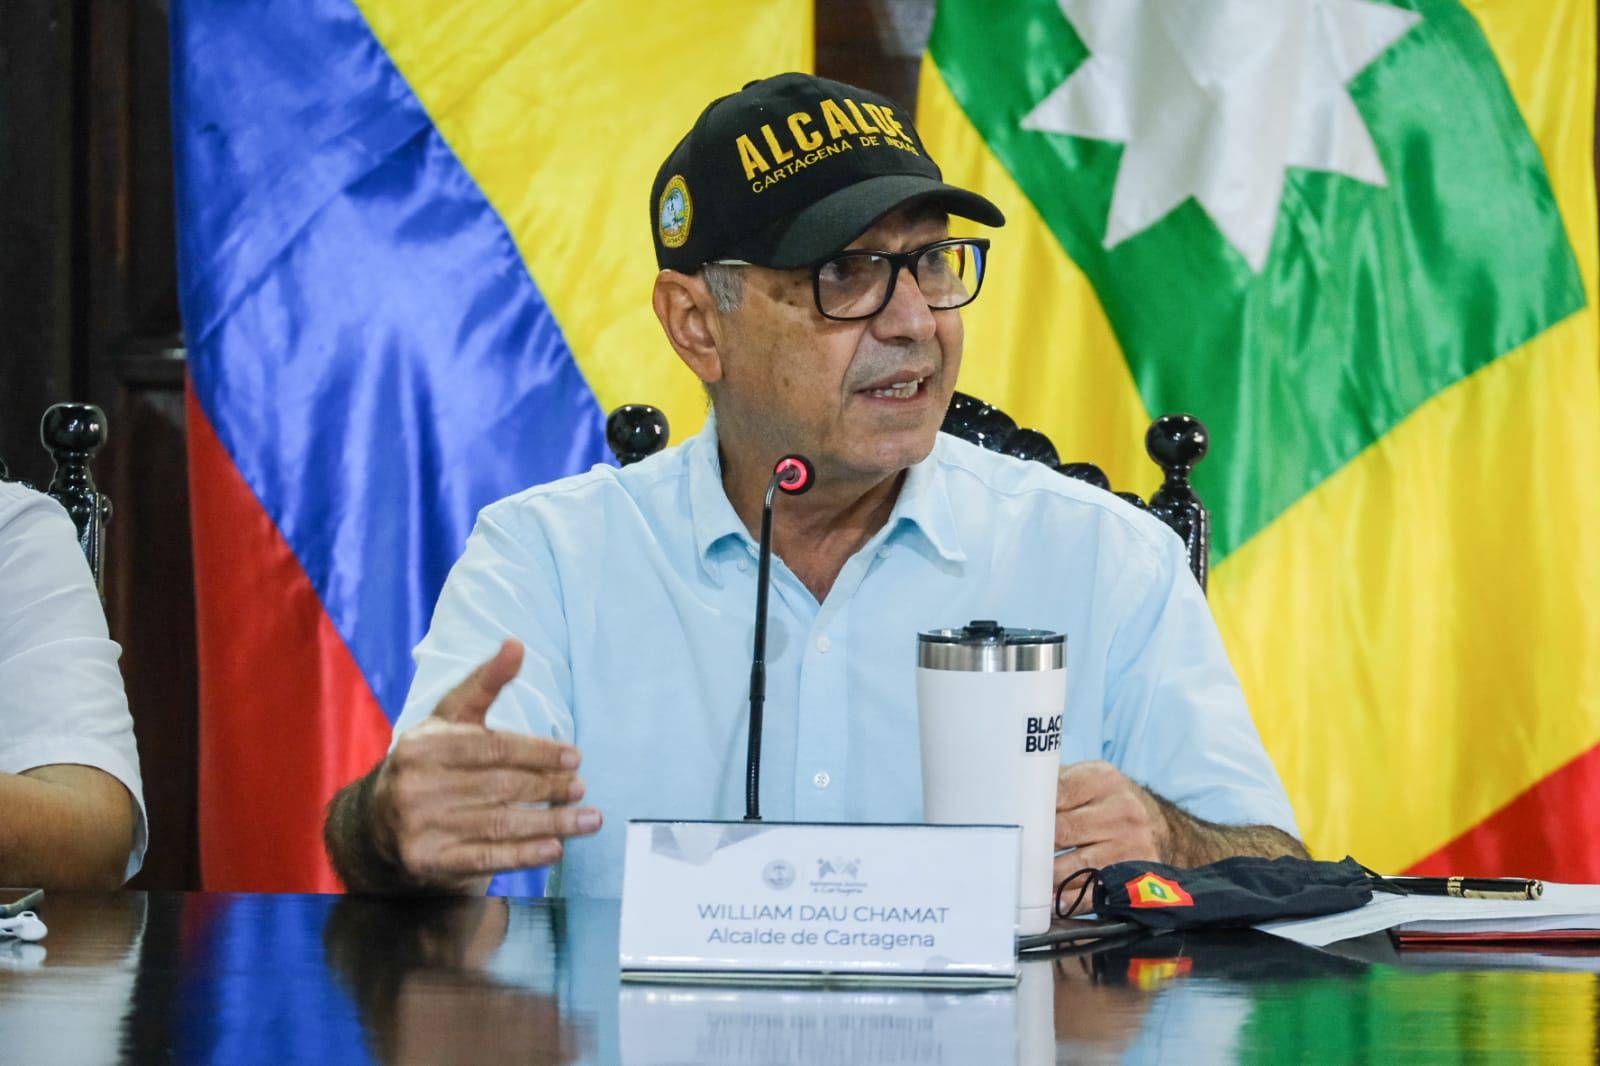 Contralor Distrital de Cartagena pide al presidente Duque suspender al  alcalde Dau